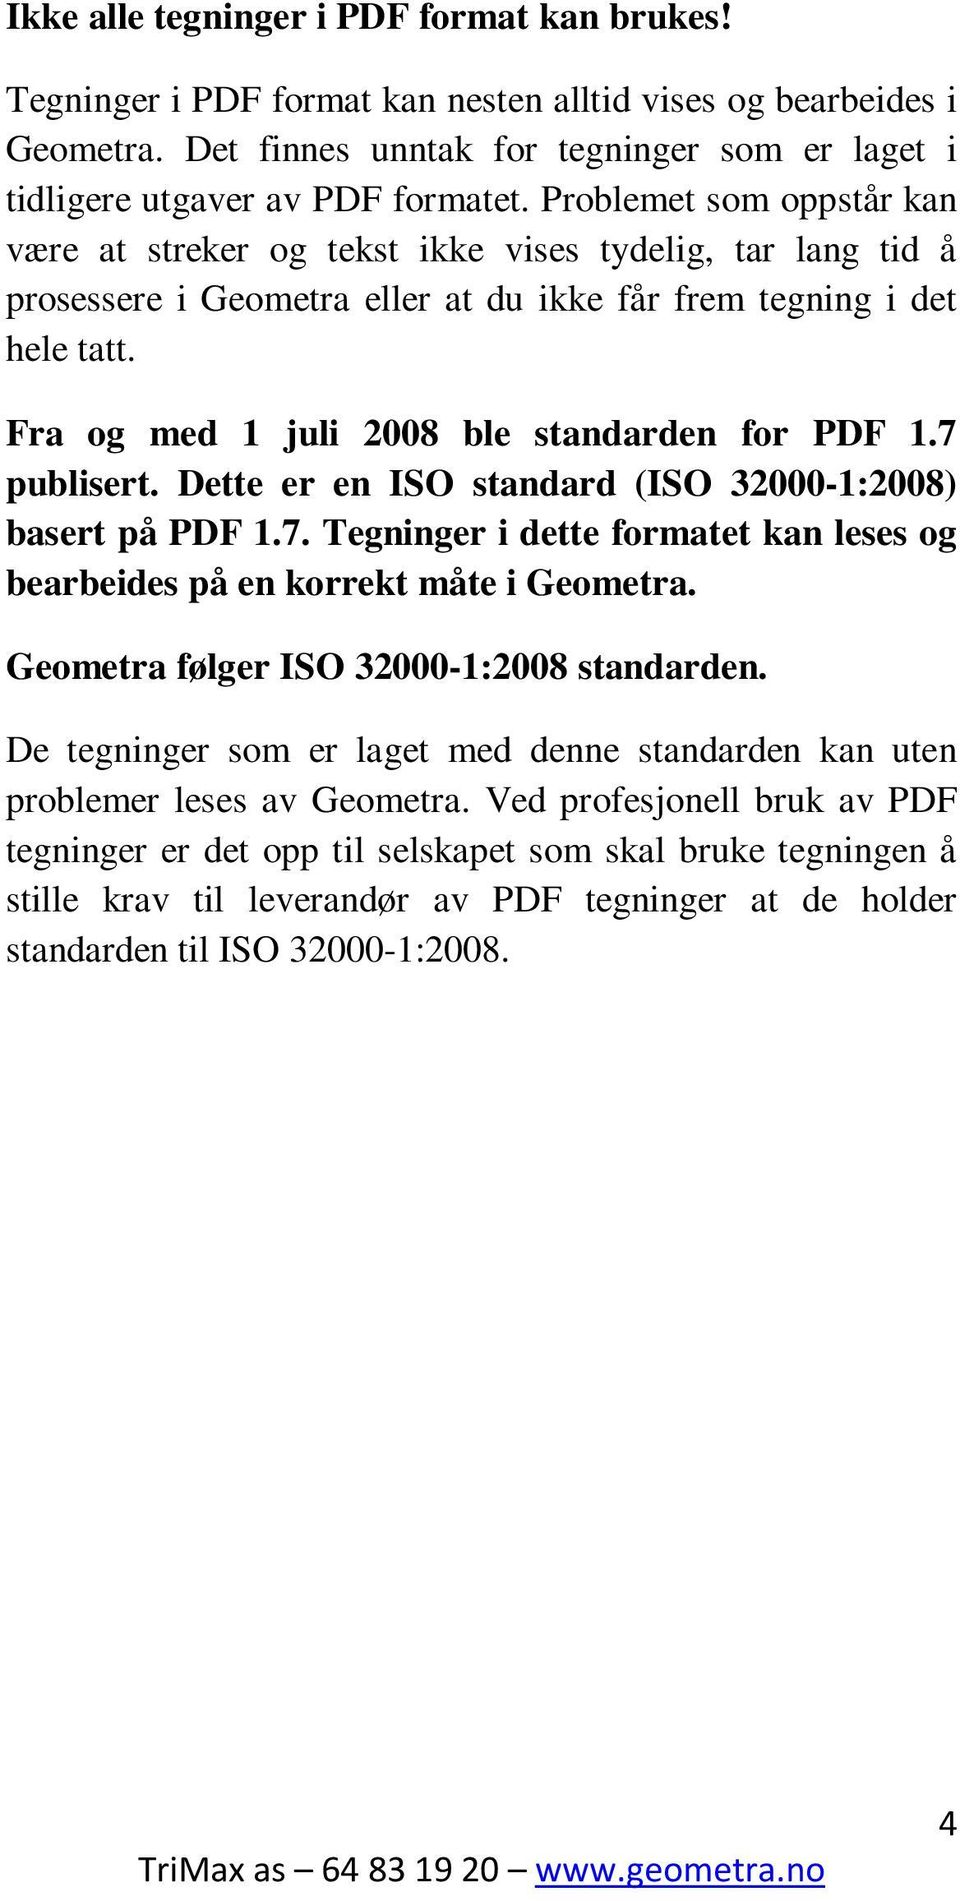 Fra og med 1 juli 2008 ble standarden for PDF 1.7 publisert. Dette er en ISO standard (ISO 32000-1:2008) basert på PDF 1.7. Tegninger i dette formatet kan leses og bearbeides på en korrekt måte i Geometra.